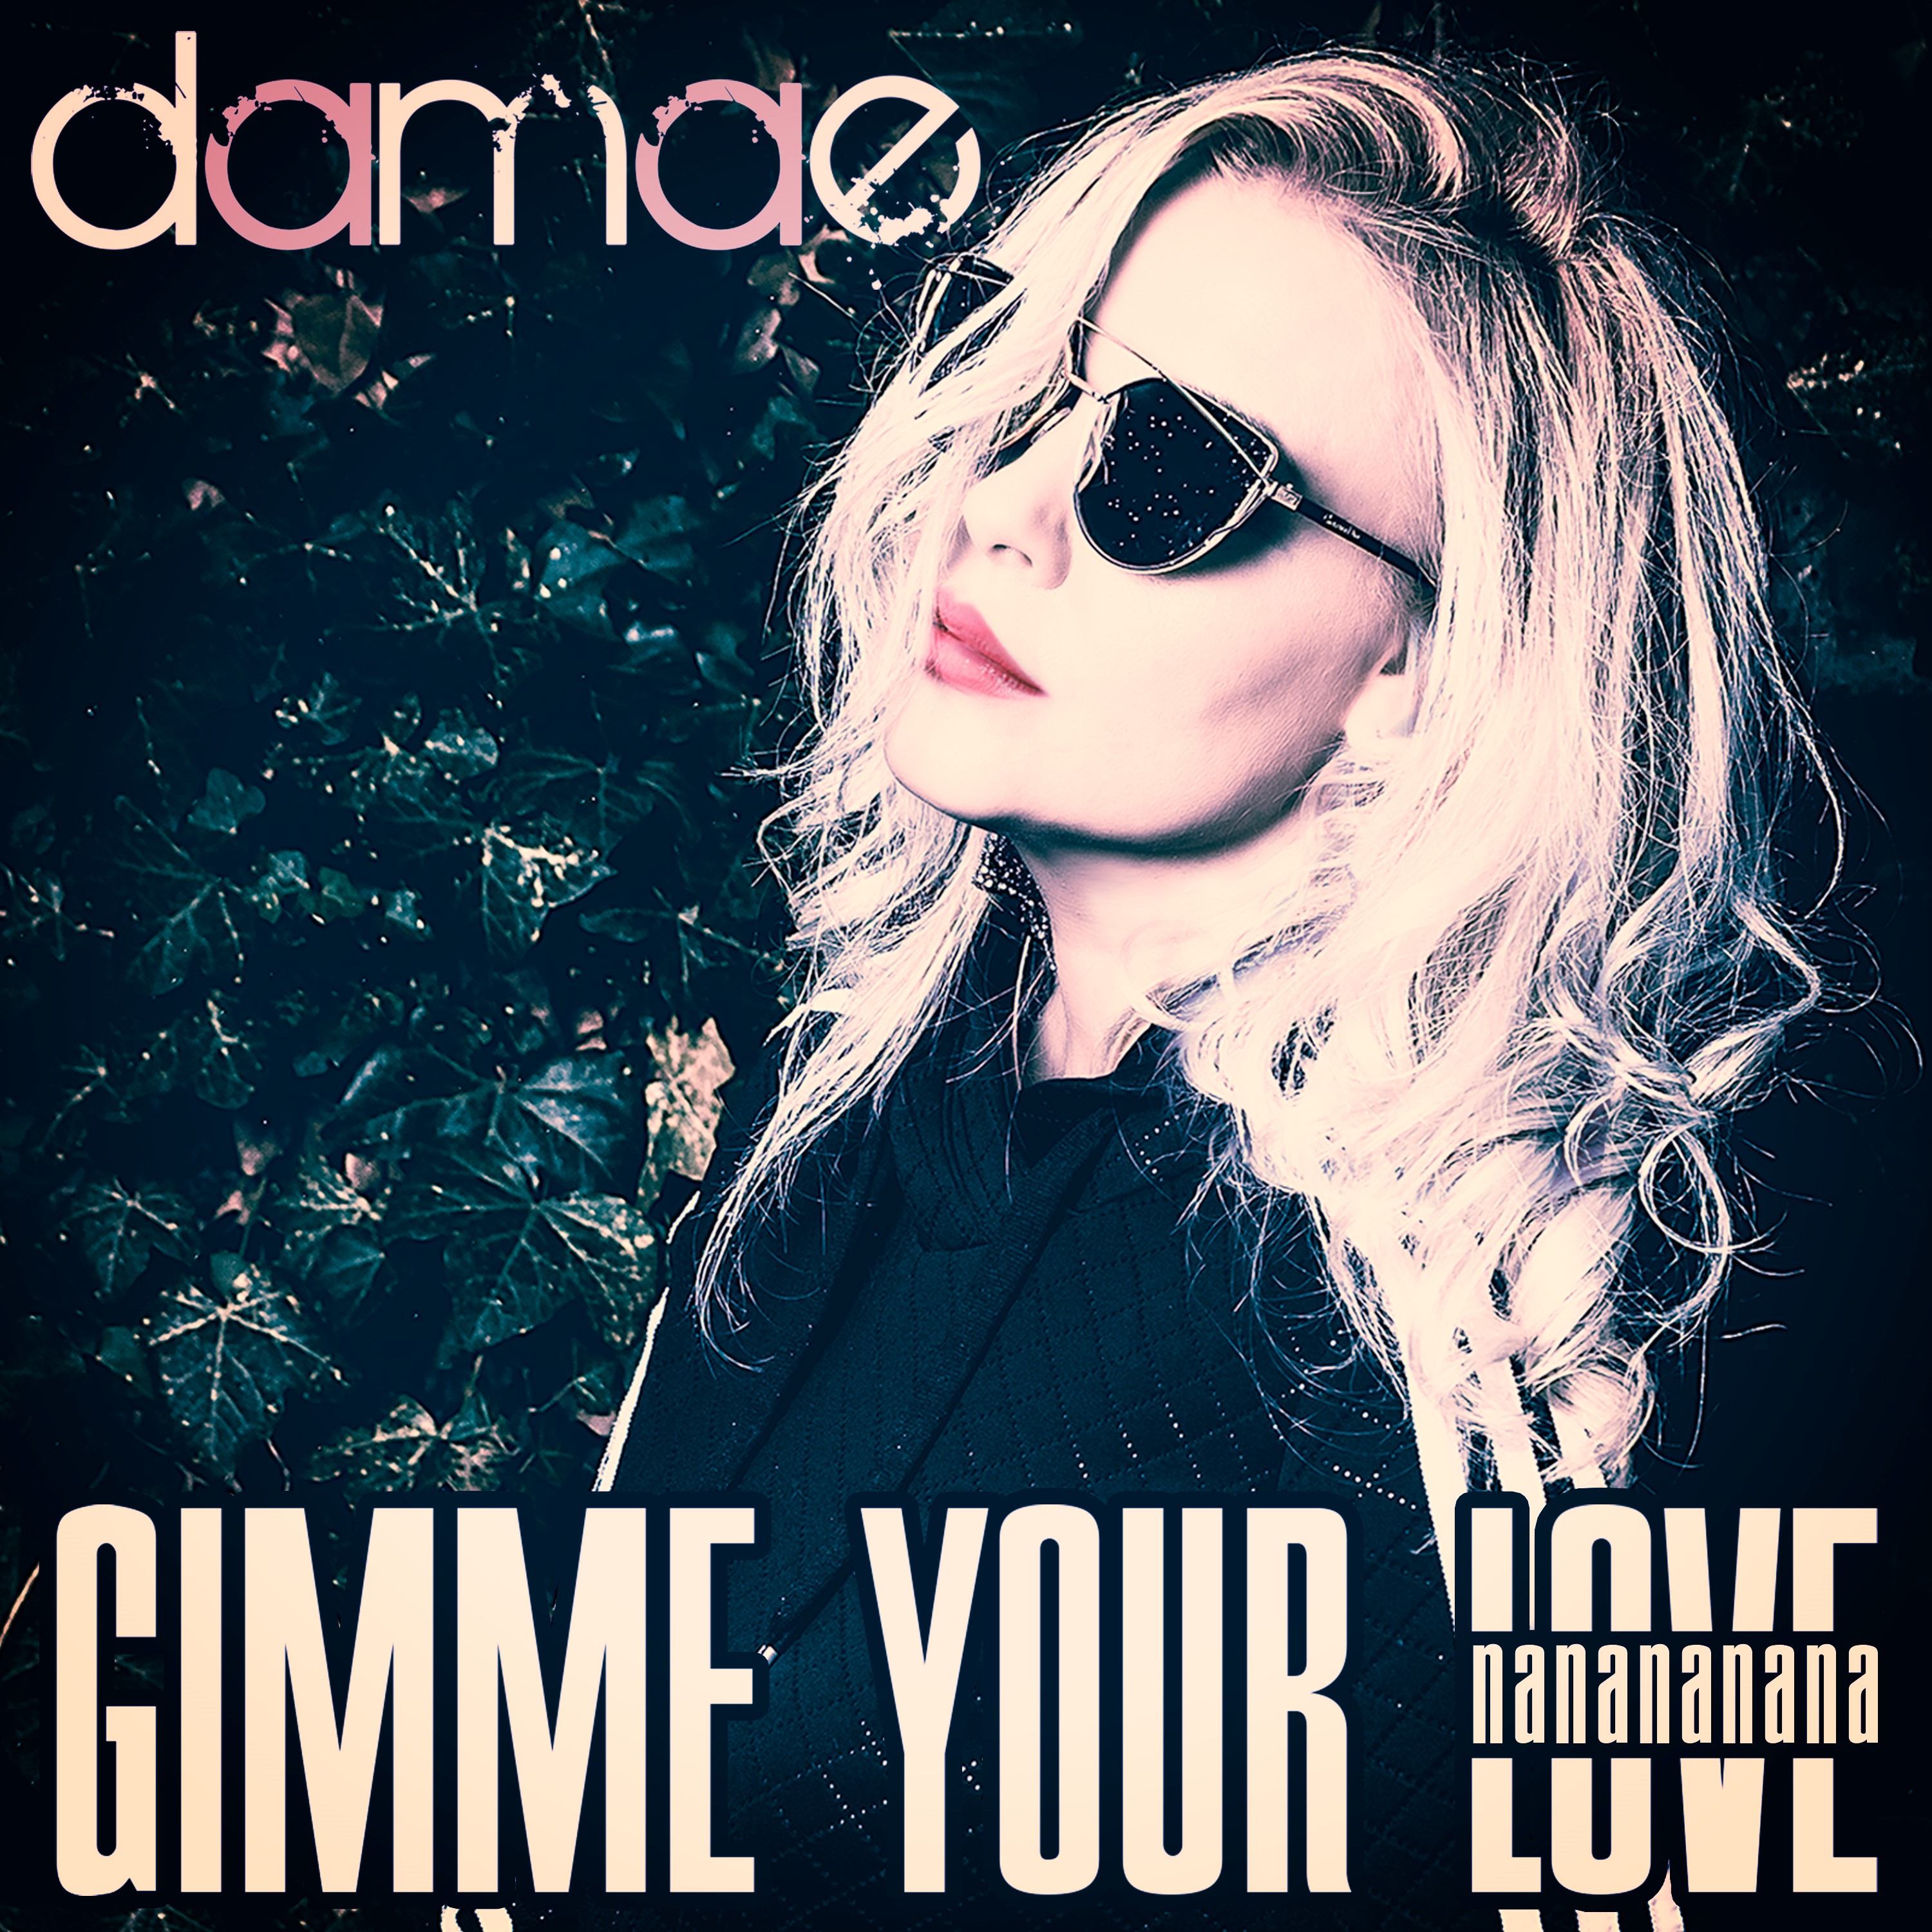 Damae - gimme your love nananana